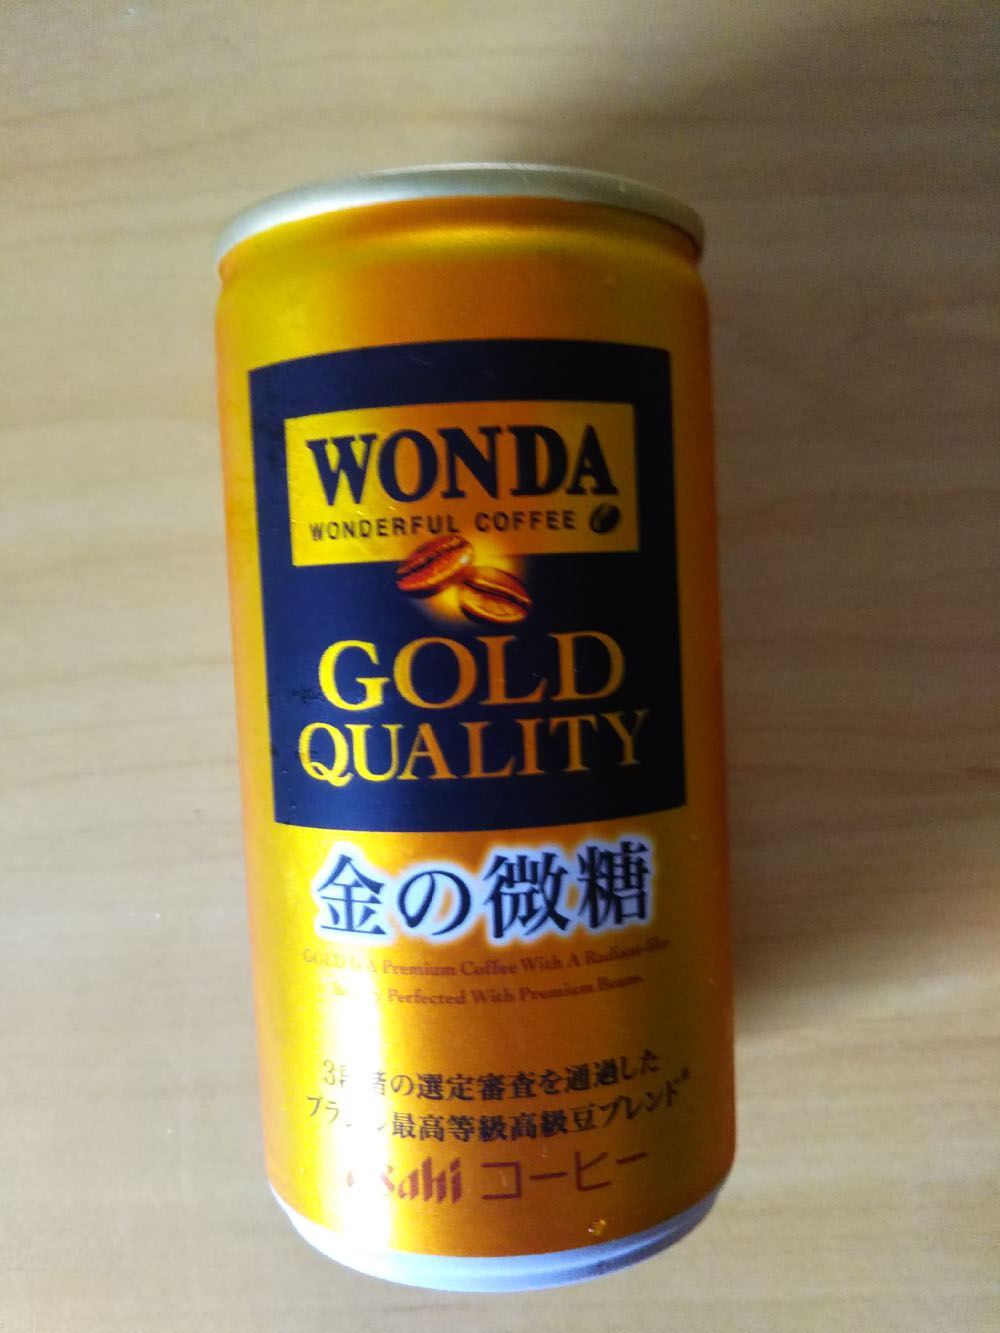 WONDAの金の微糖